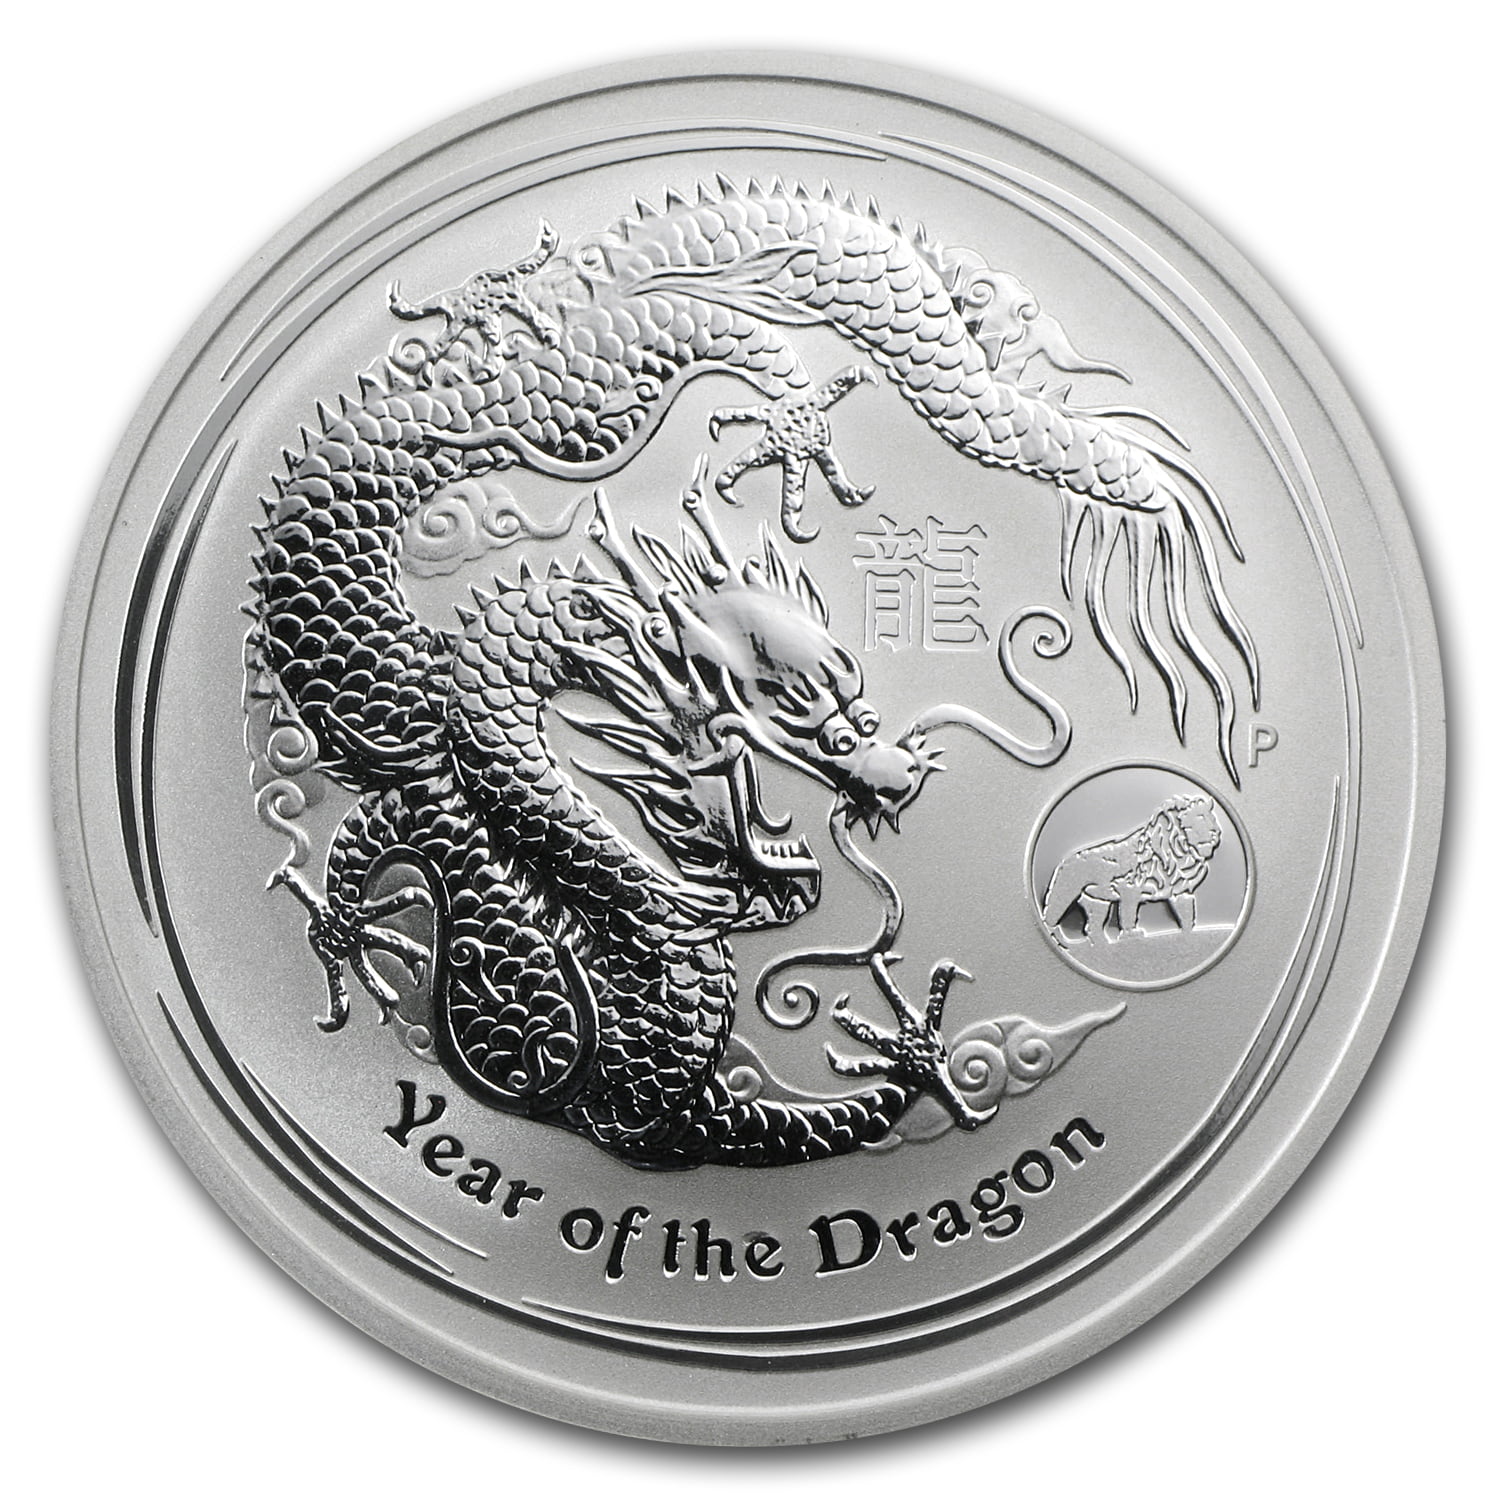 Lunar Dragon 2oz Silver Series 2 Coin Capsule 2012 